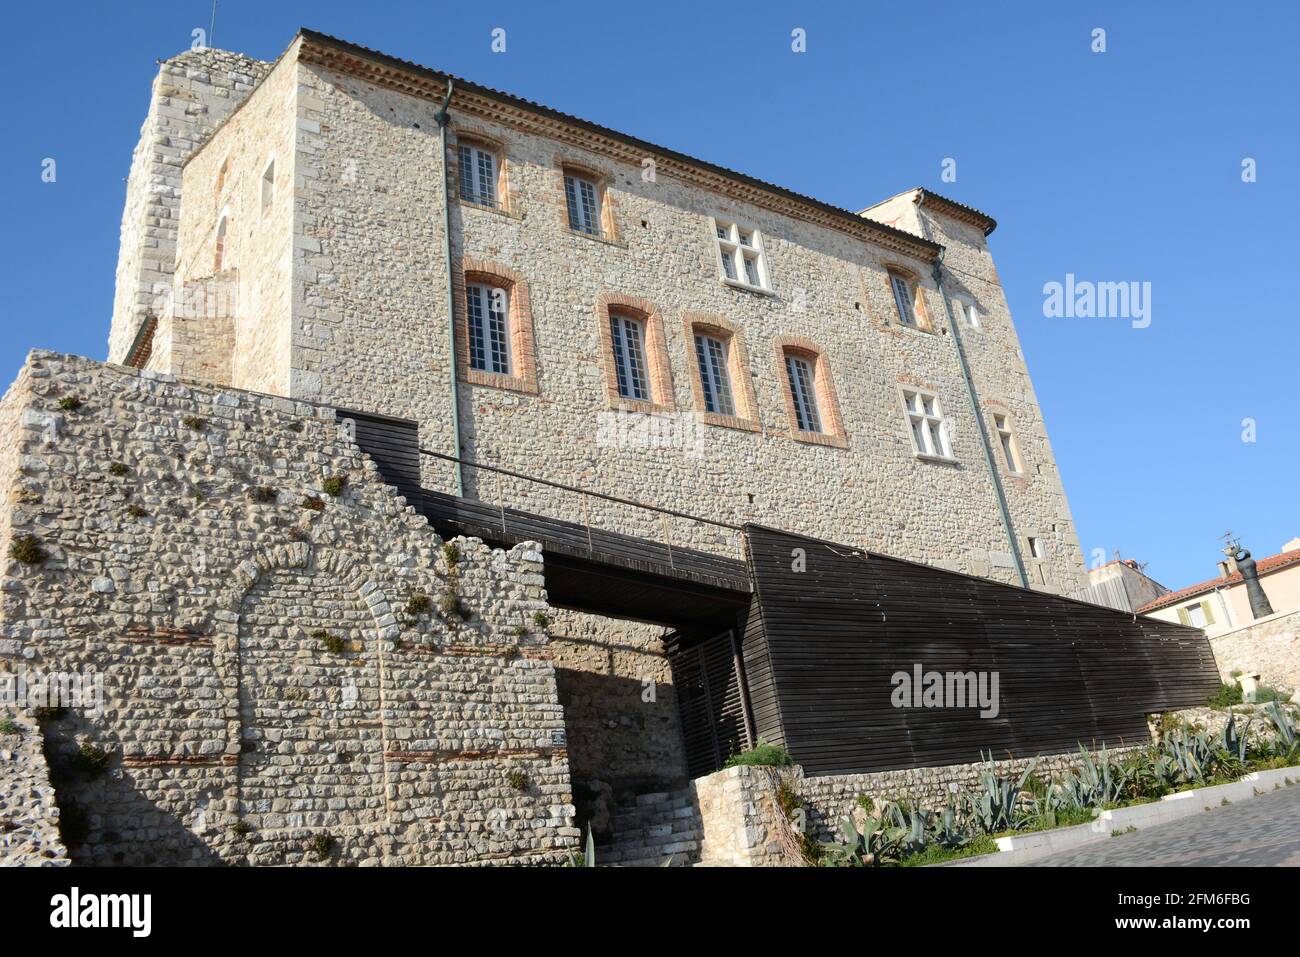 France, côte d'azur, Antibes, le Grimaldi castel abrite un célèbre musée d'art moderne dans le centre historique à proximité des remparts. Banque D'Images